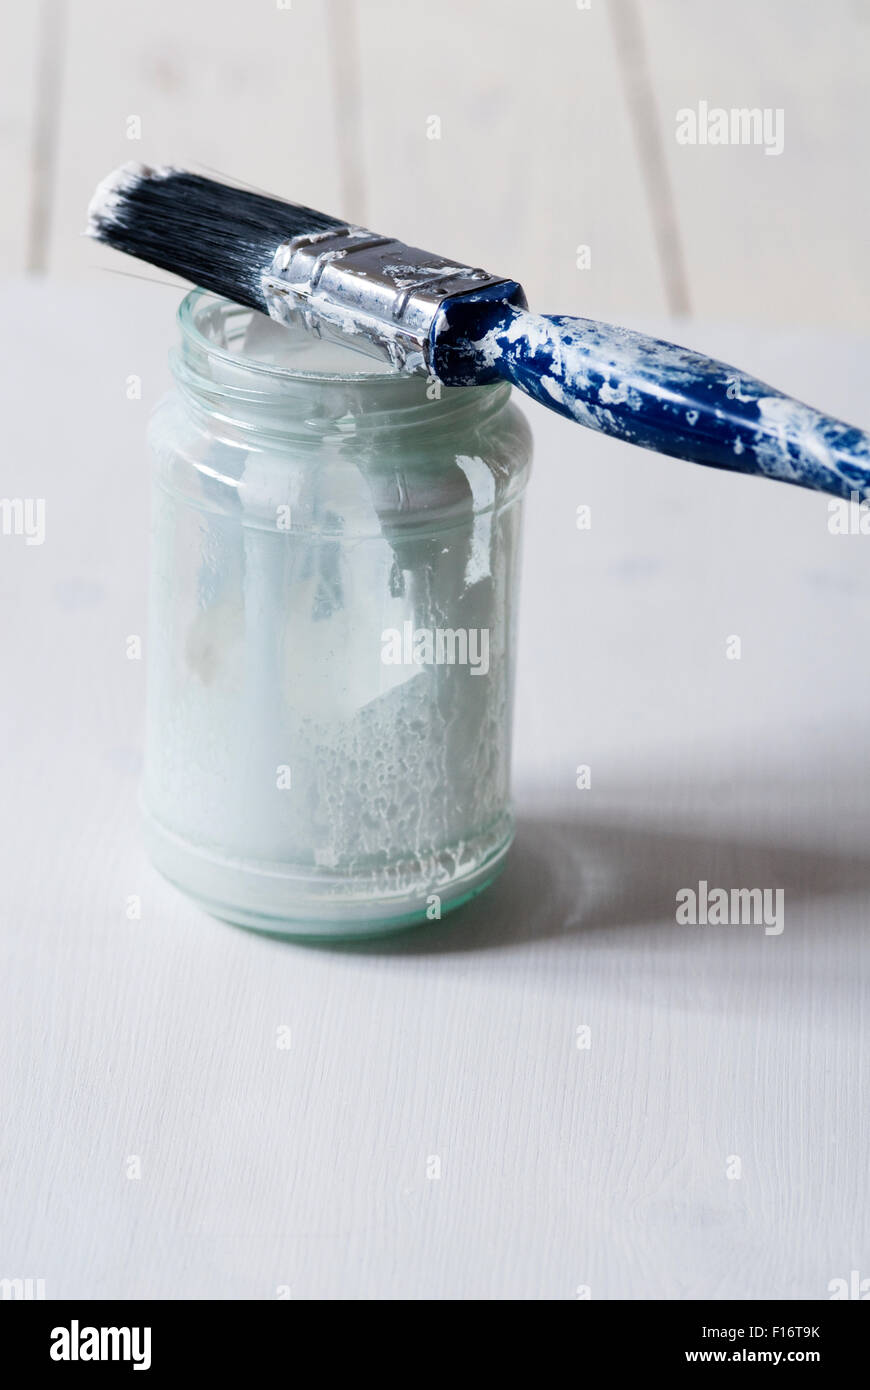 Pinsel mit Farbe auf einem marmeladenglas aus weißer Farbe bespritzt ausgeglichene Handgriff - Konzept noch leben Bild von Dekoration oder Malerei Stockfoto